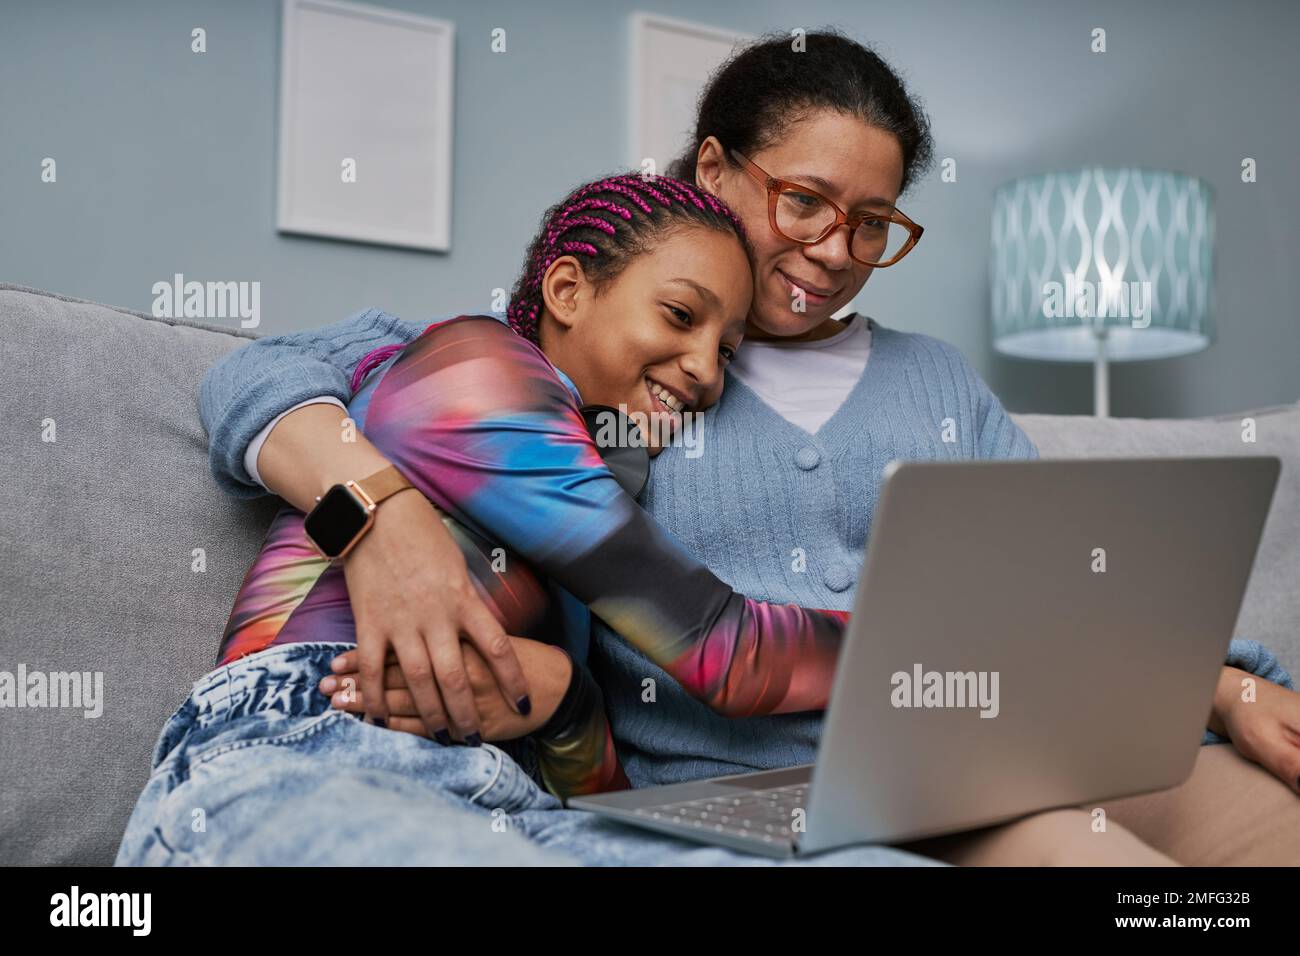 Ritratto di ragazza adolescente nera che usa il laptop mentre coccola con la mamma sul divano Foto Stock